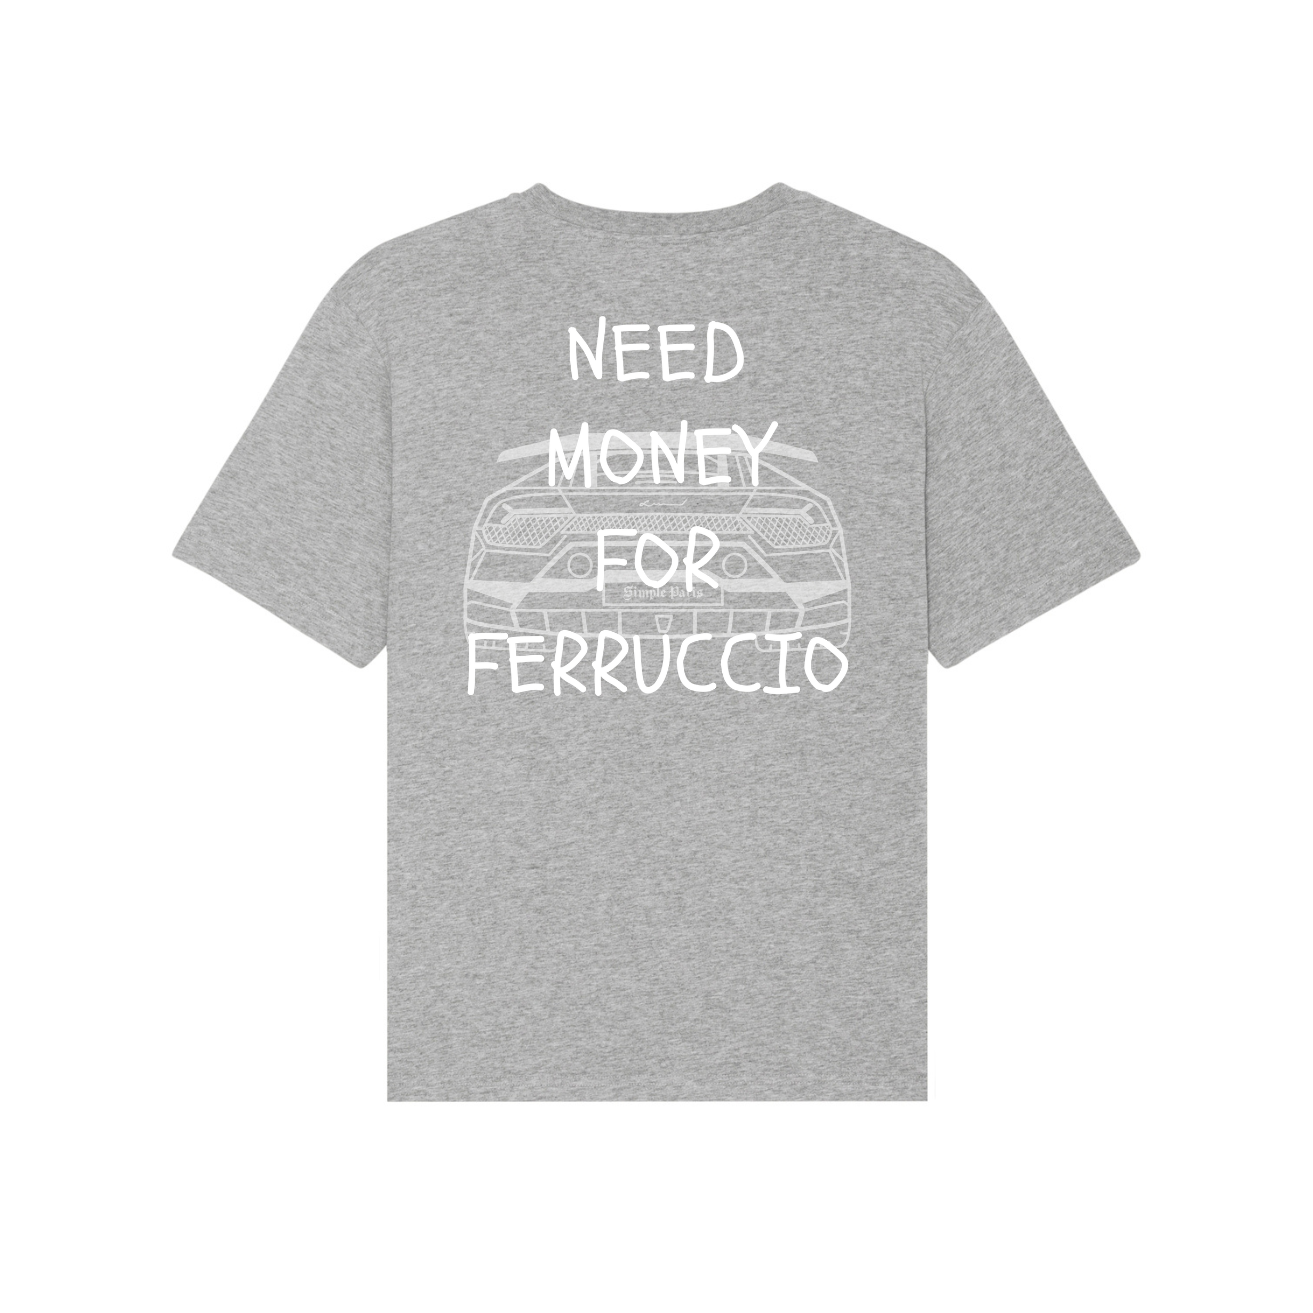 FERRUCCIO (t-shirt)